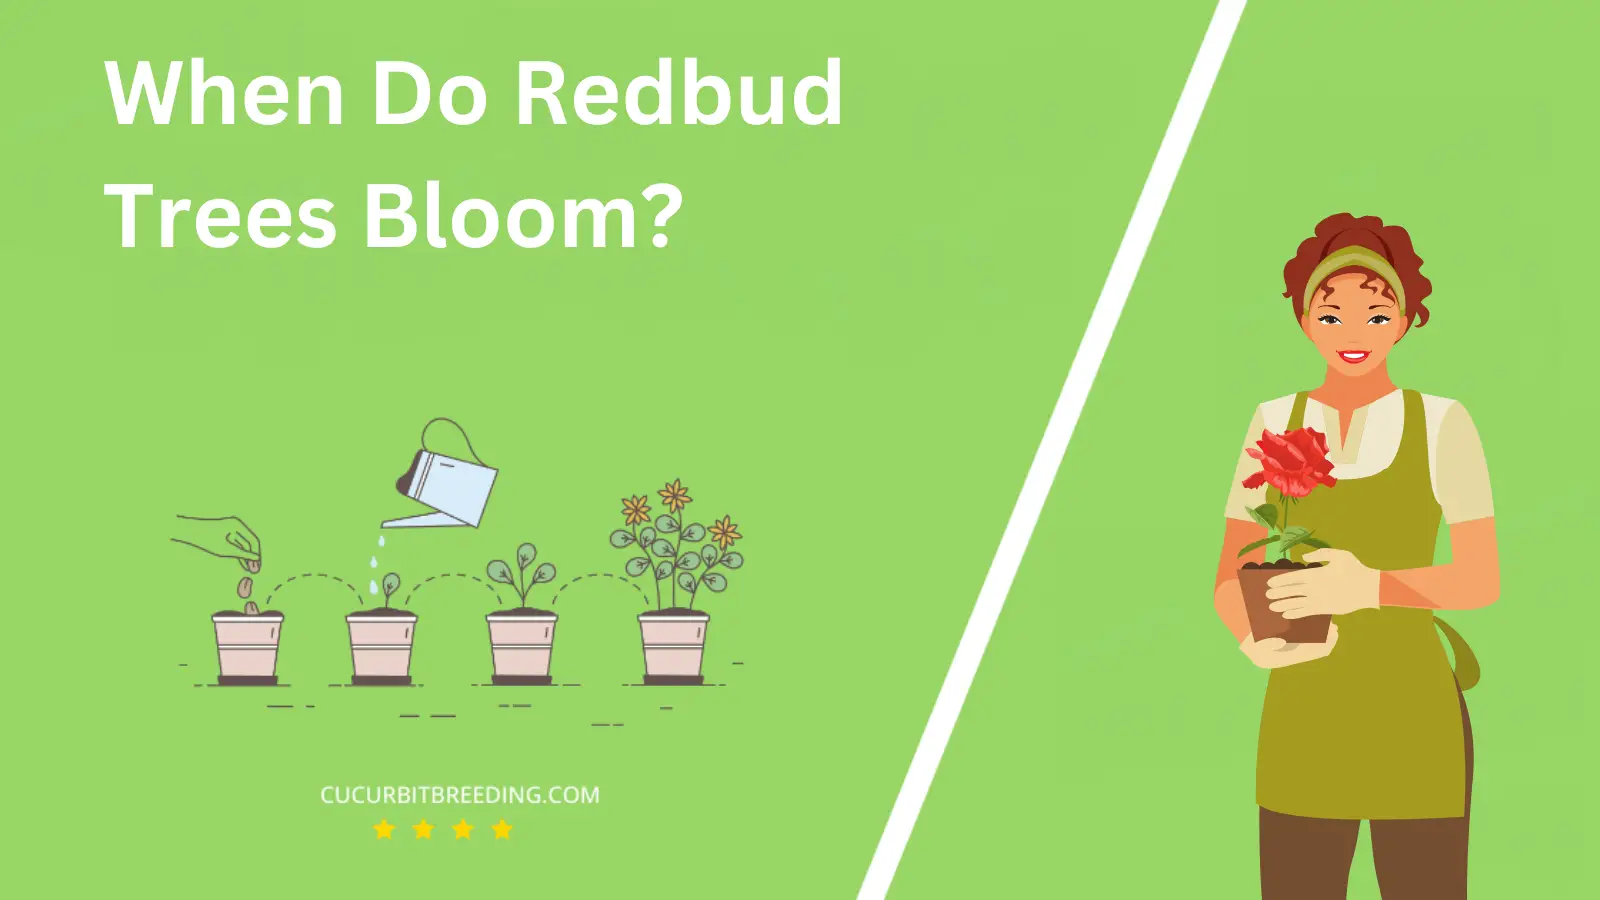 When Do Redbud Trees Bloom?